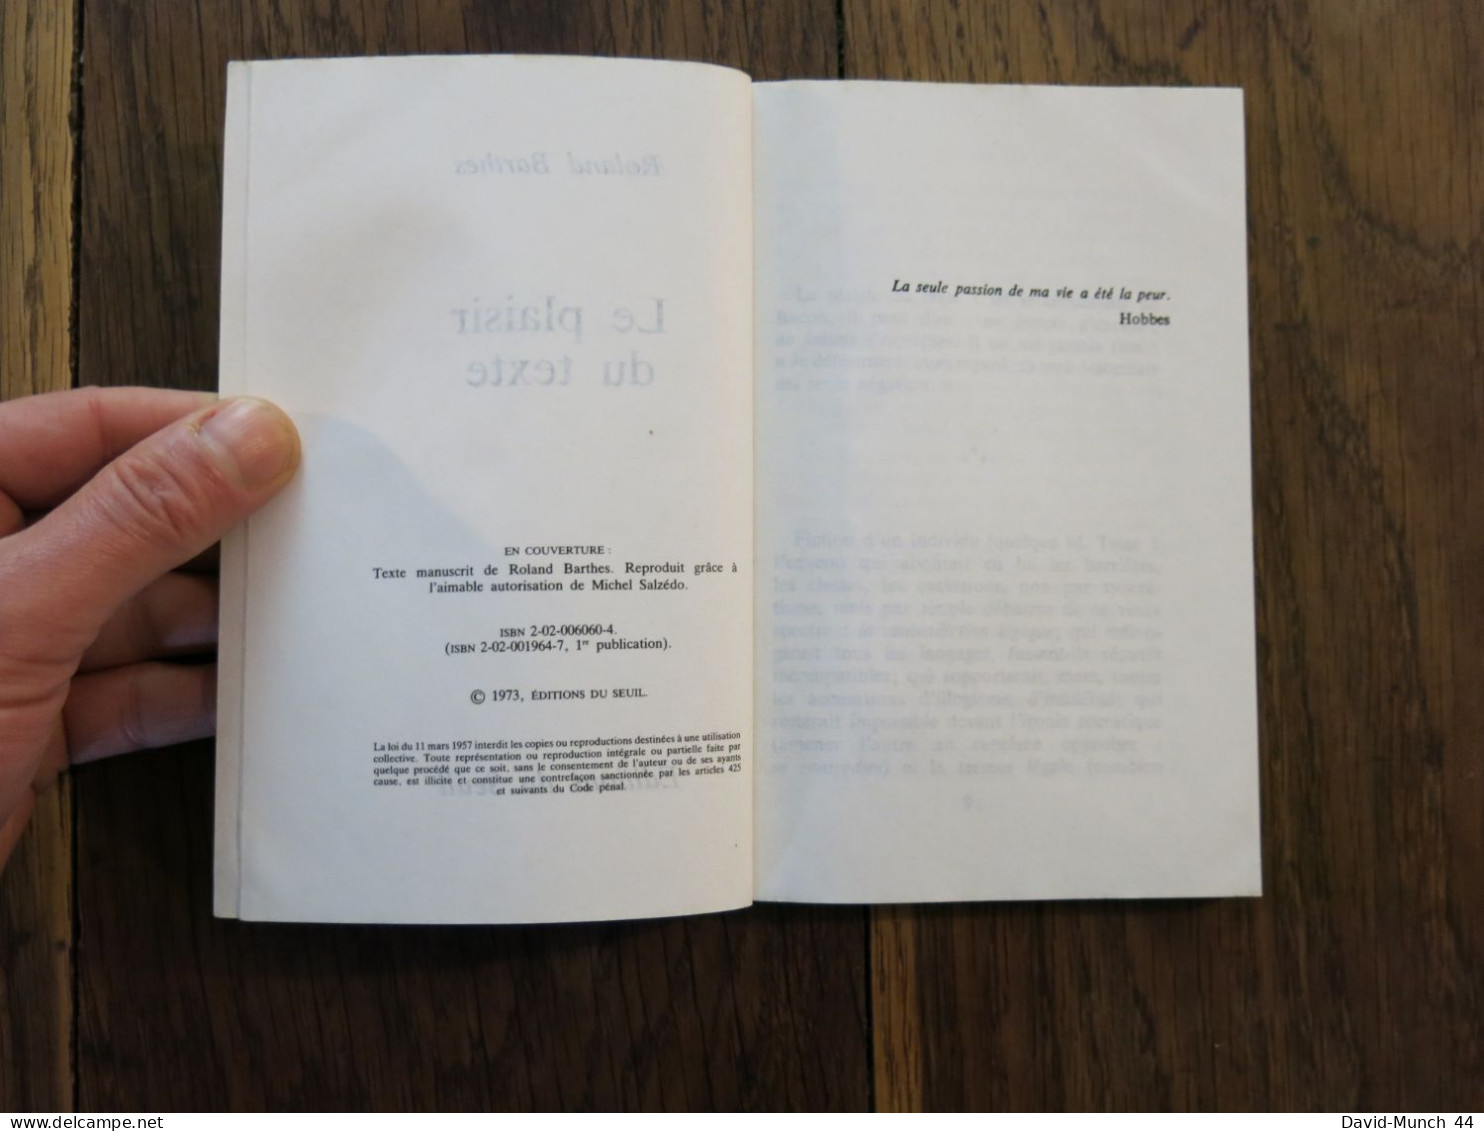 Le Plaisir Du Texte De Roland Barthes. Editions Du Seul, Points. 1973 - Psychologie/Philosophie